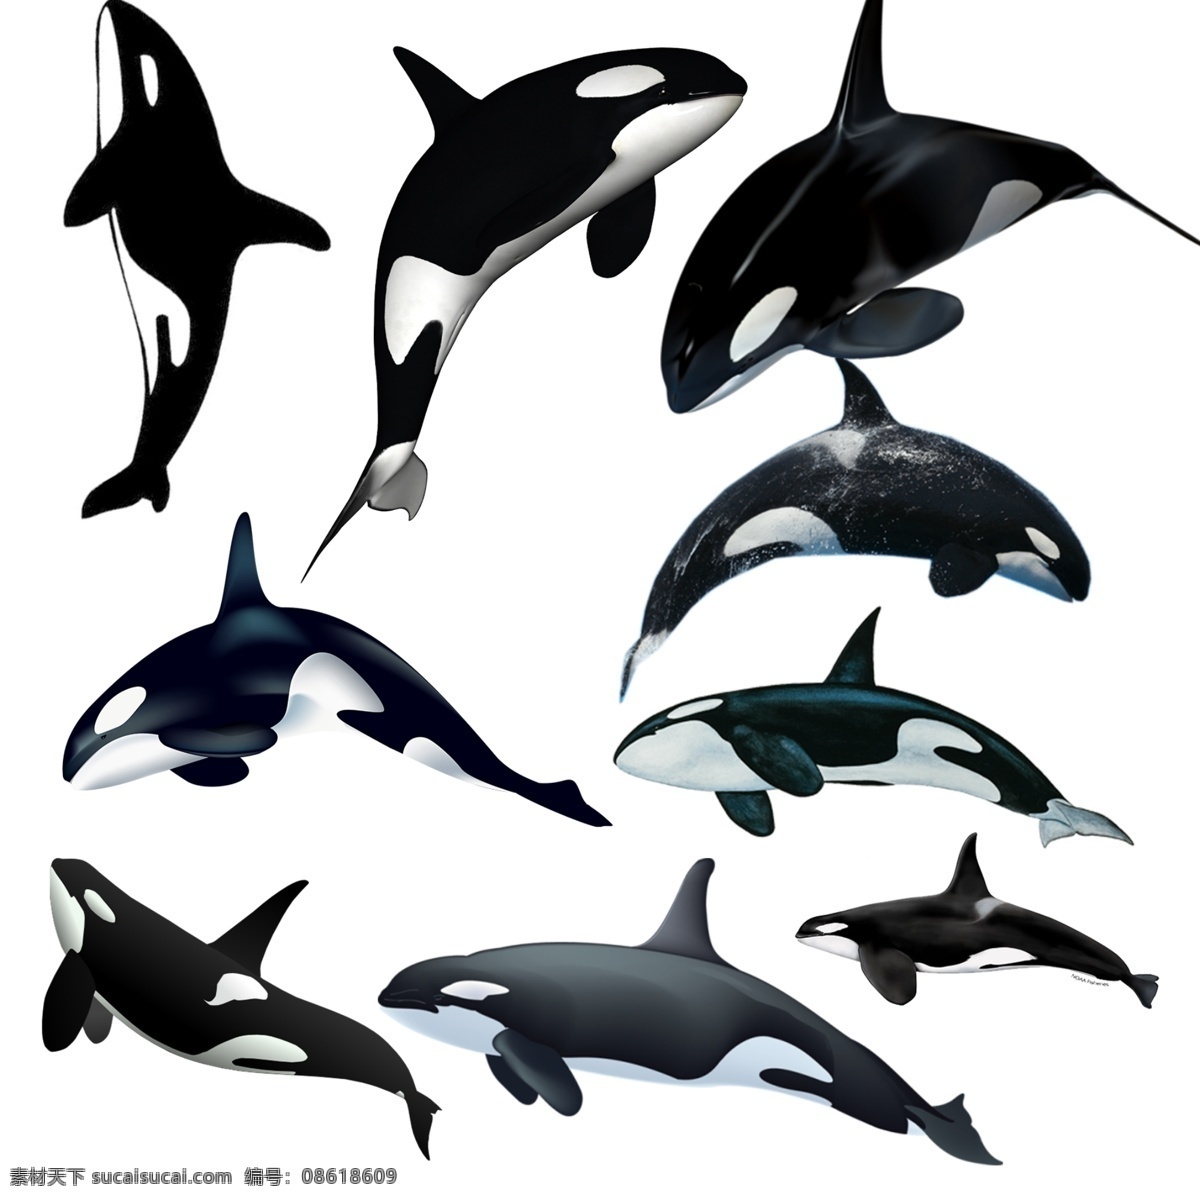 鲸鱼 免 扣 高清 素材图片 鲸鱼png 文件 鲸鱼免扣素材 鲸鱼素材 生物世界 野生动物